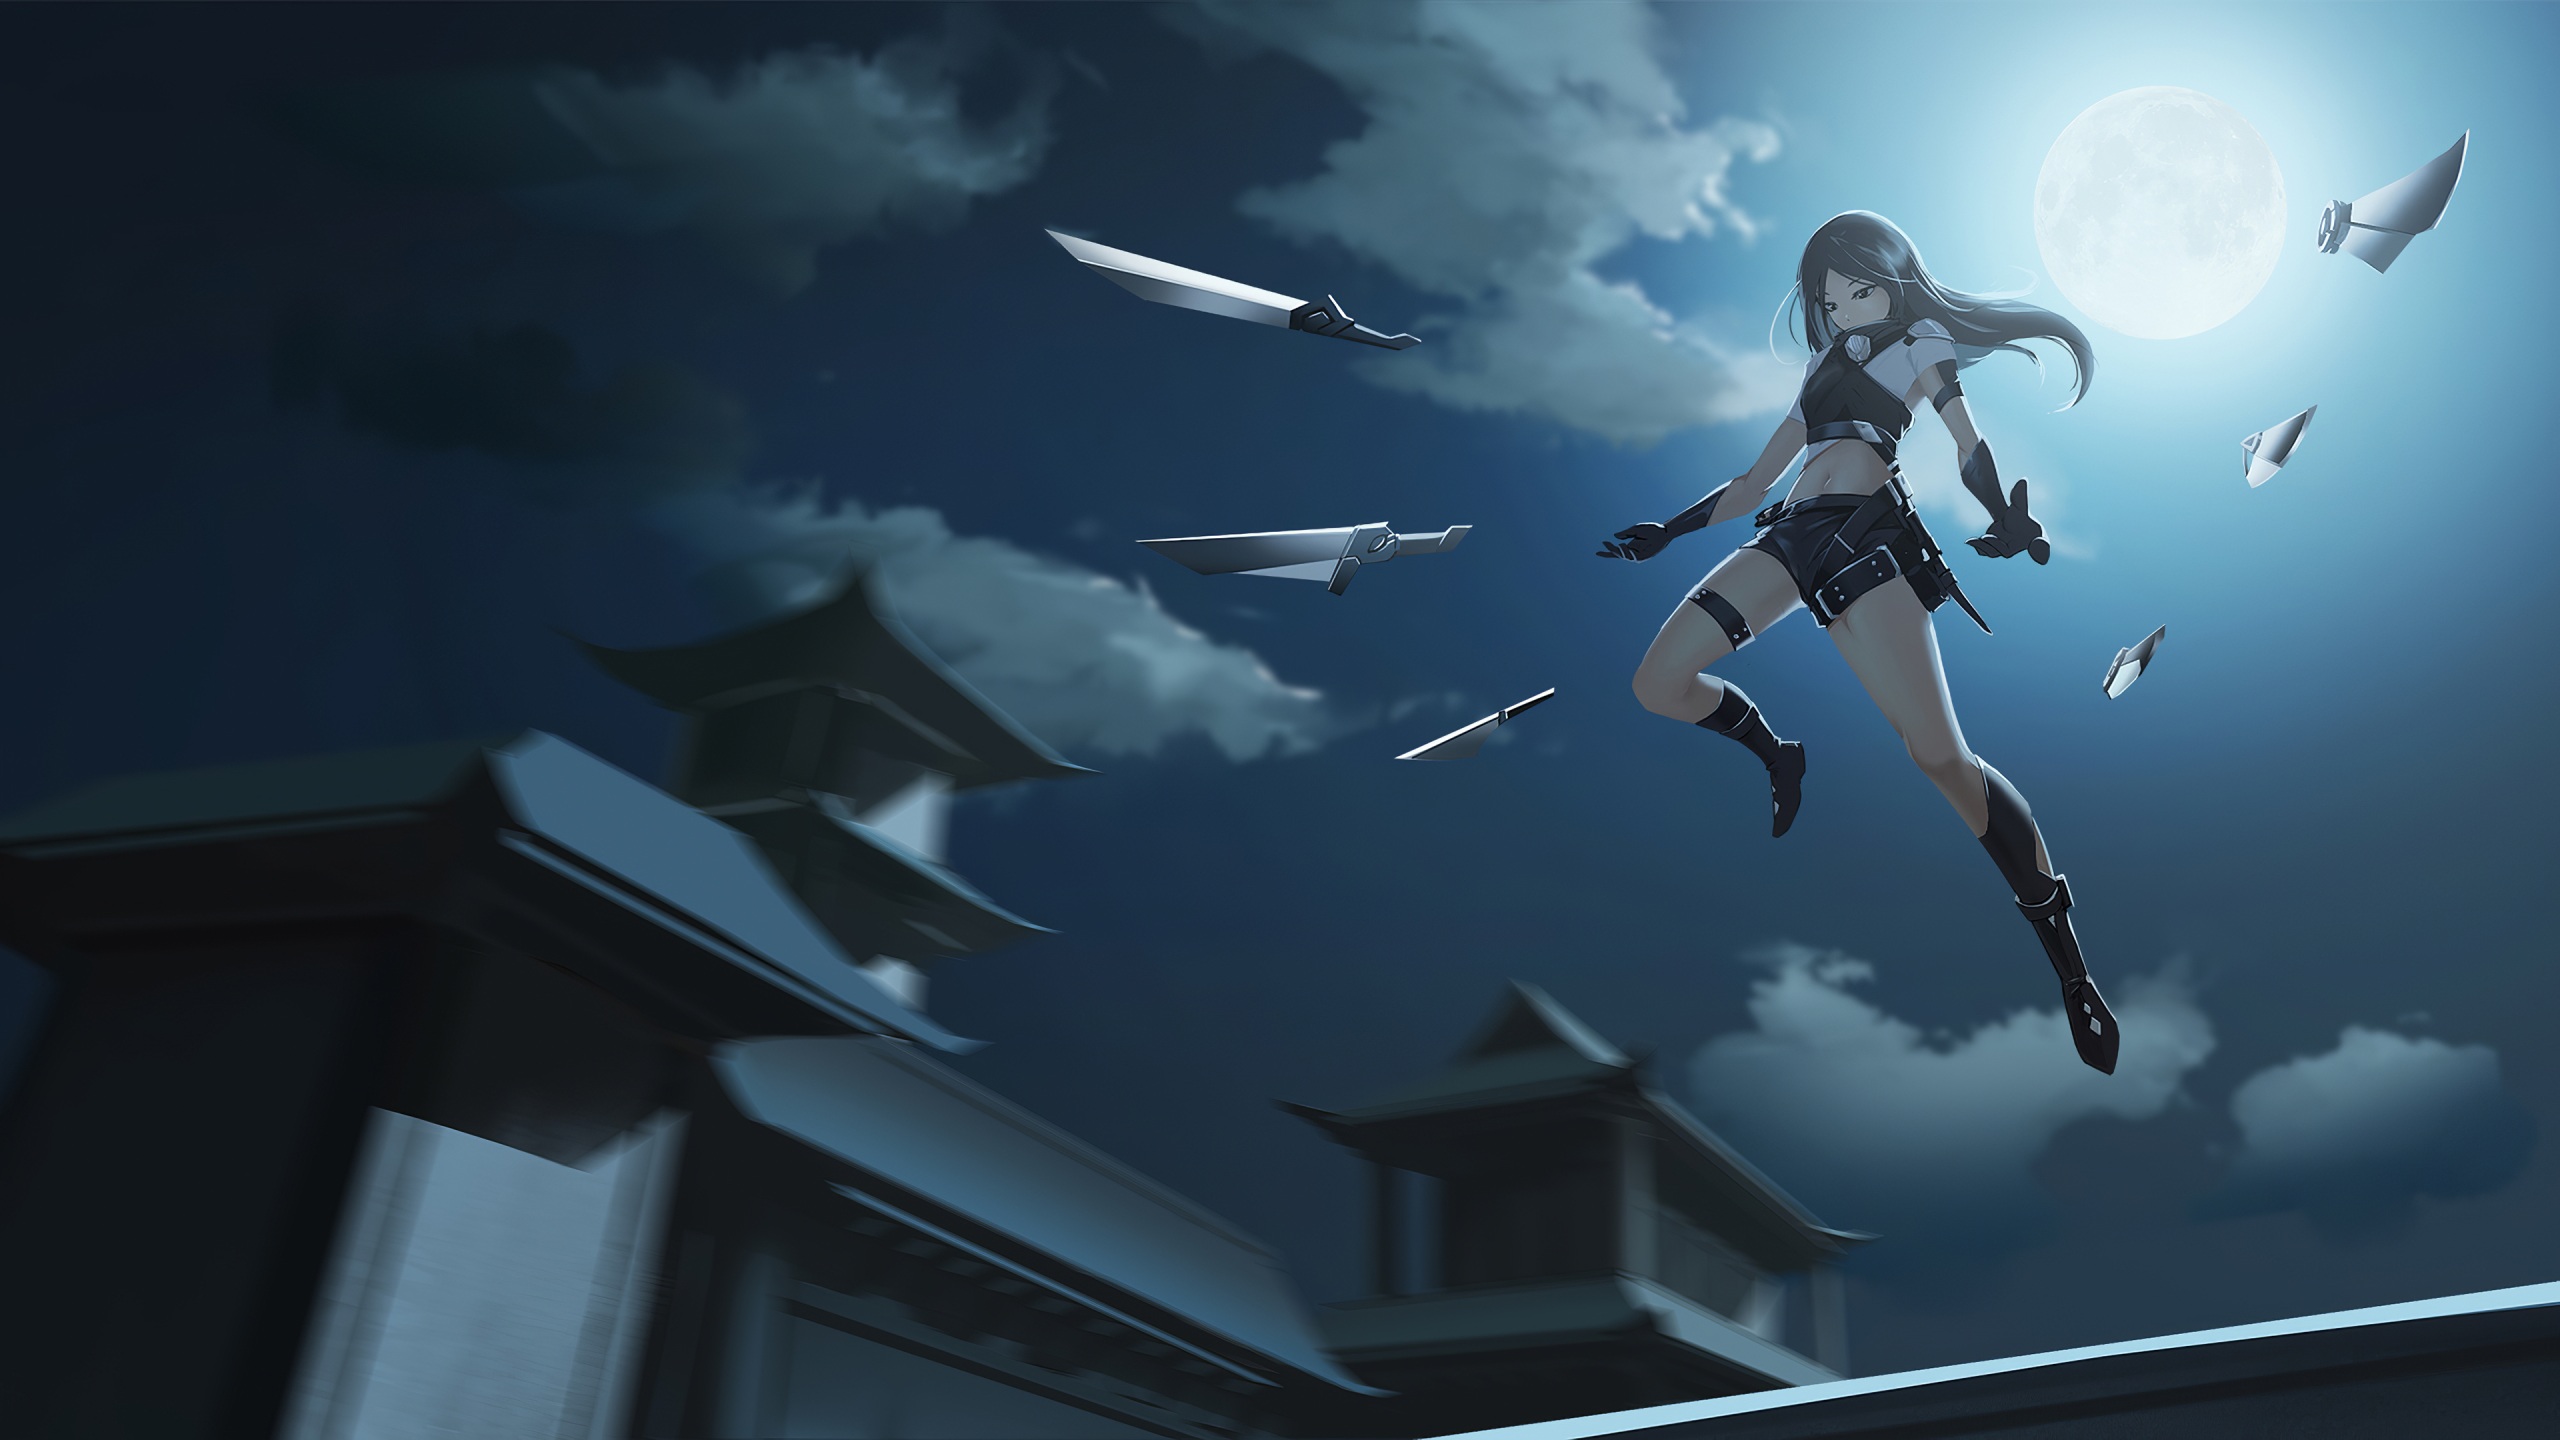 anime assassin girl wallpaper